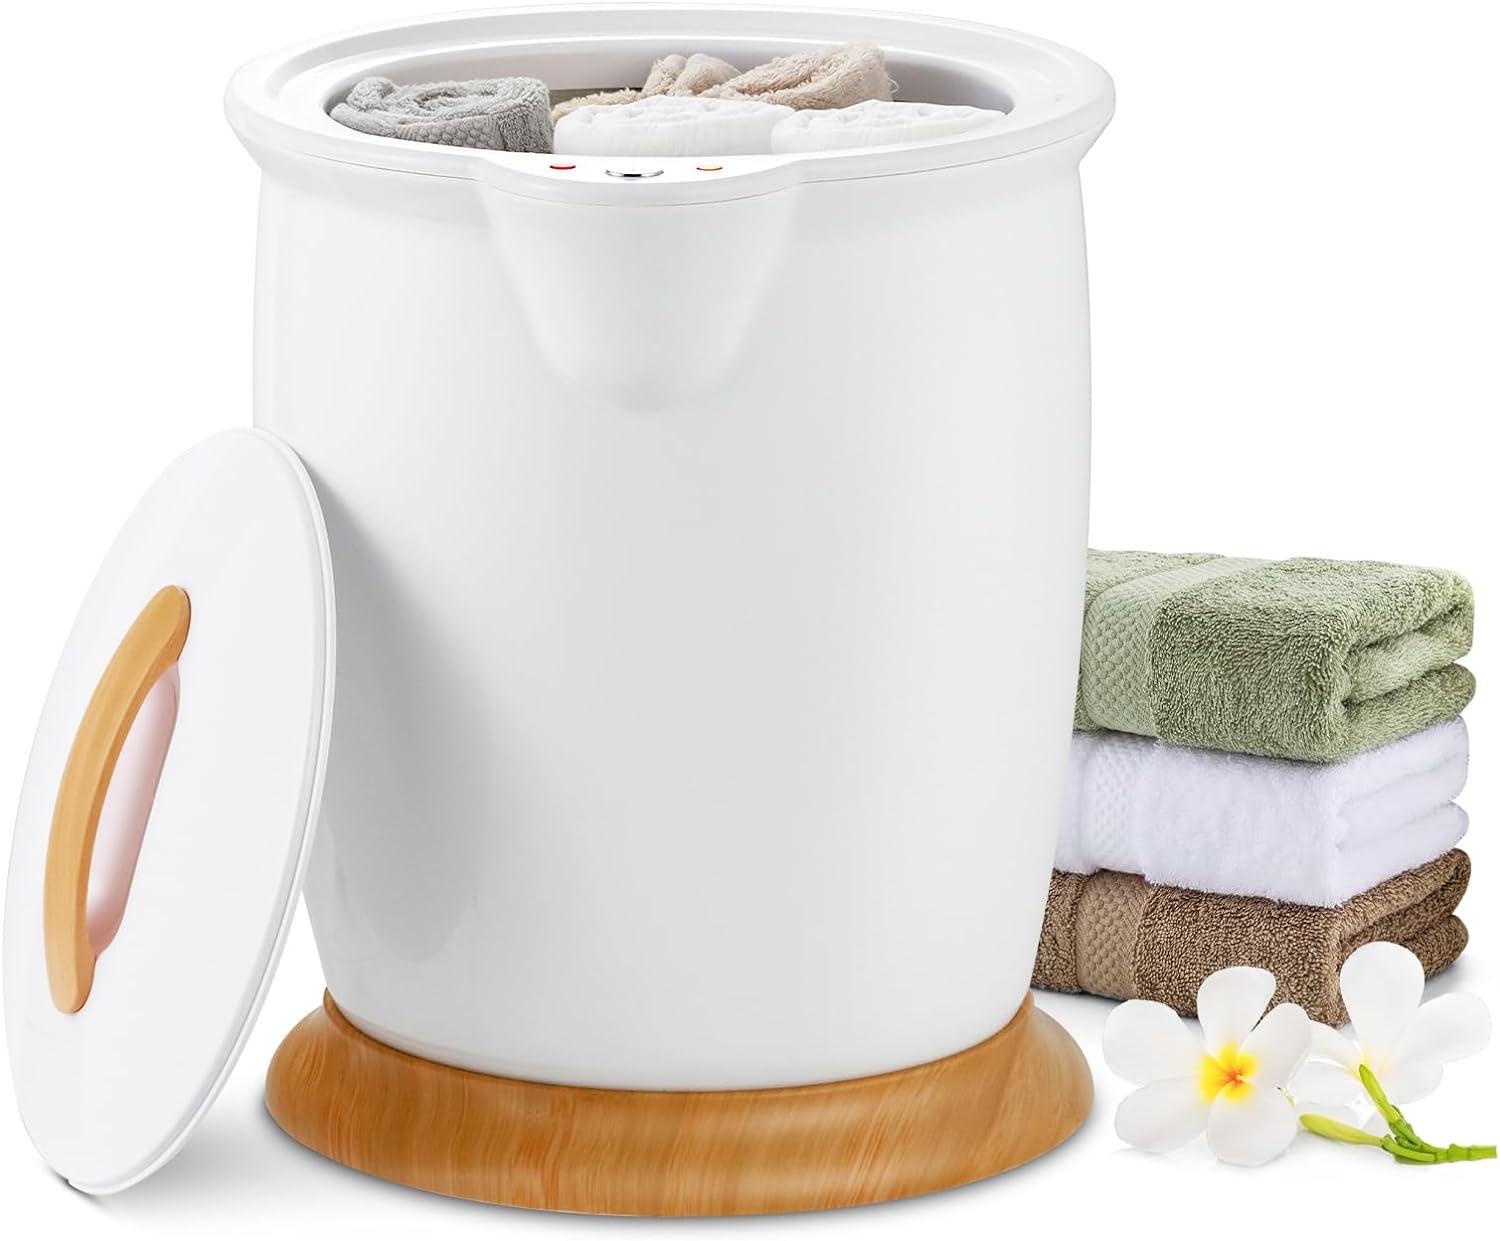 WELLHUT Calentador de toallas para baño con soporte para fragancia,  calentador de toallas de spa de lujo